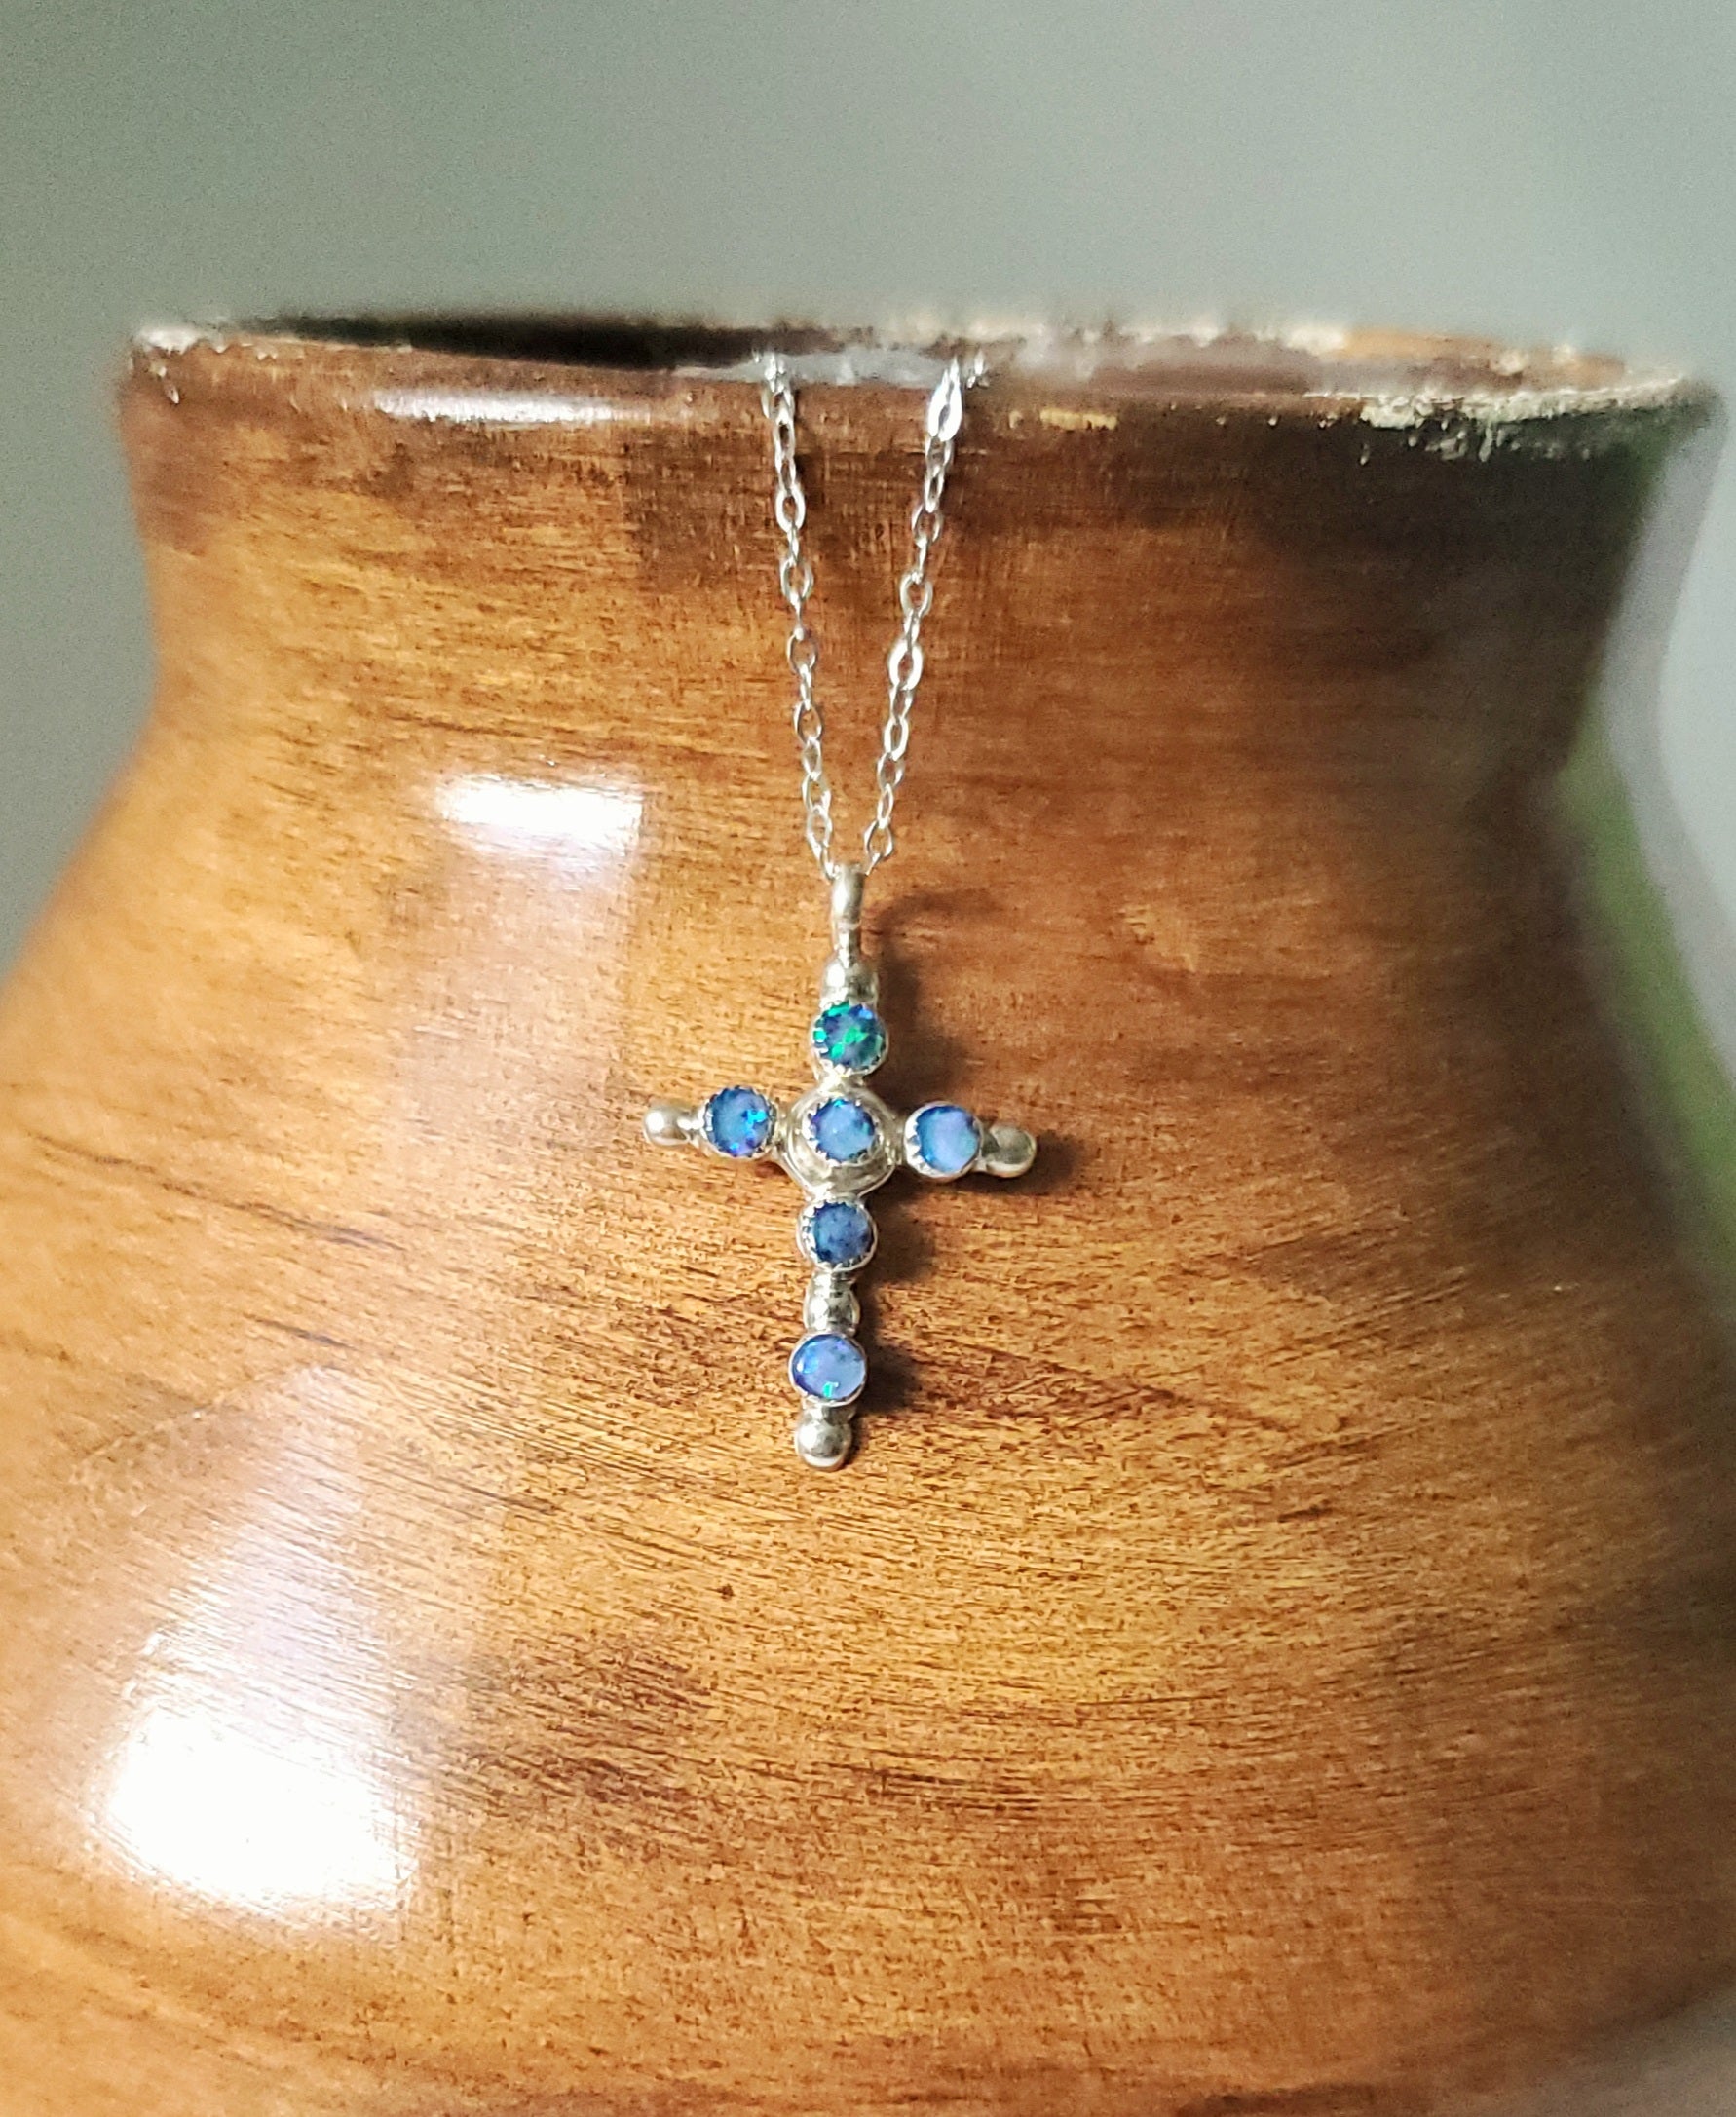 Cross' Australian Crystal Opal Necklace - Black Star Opal